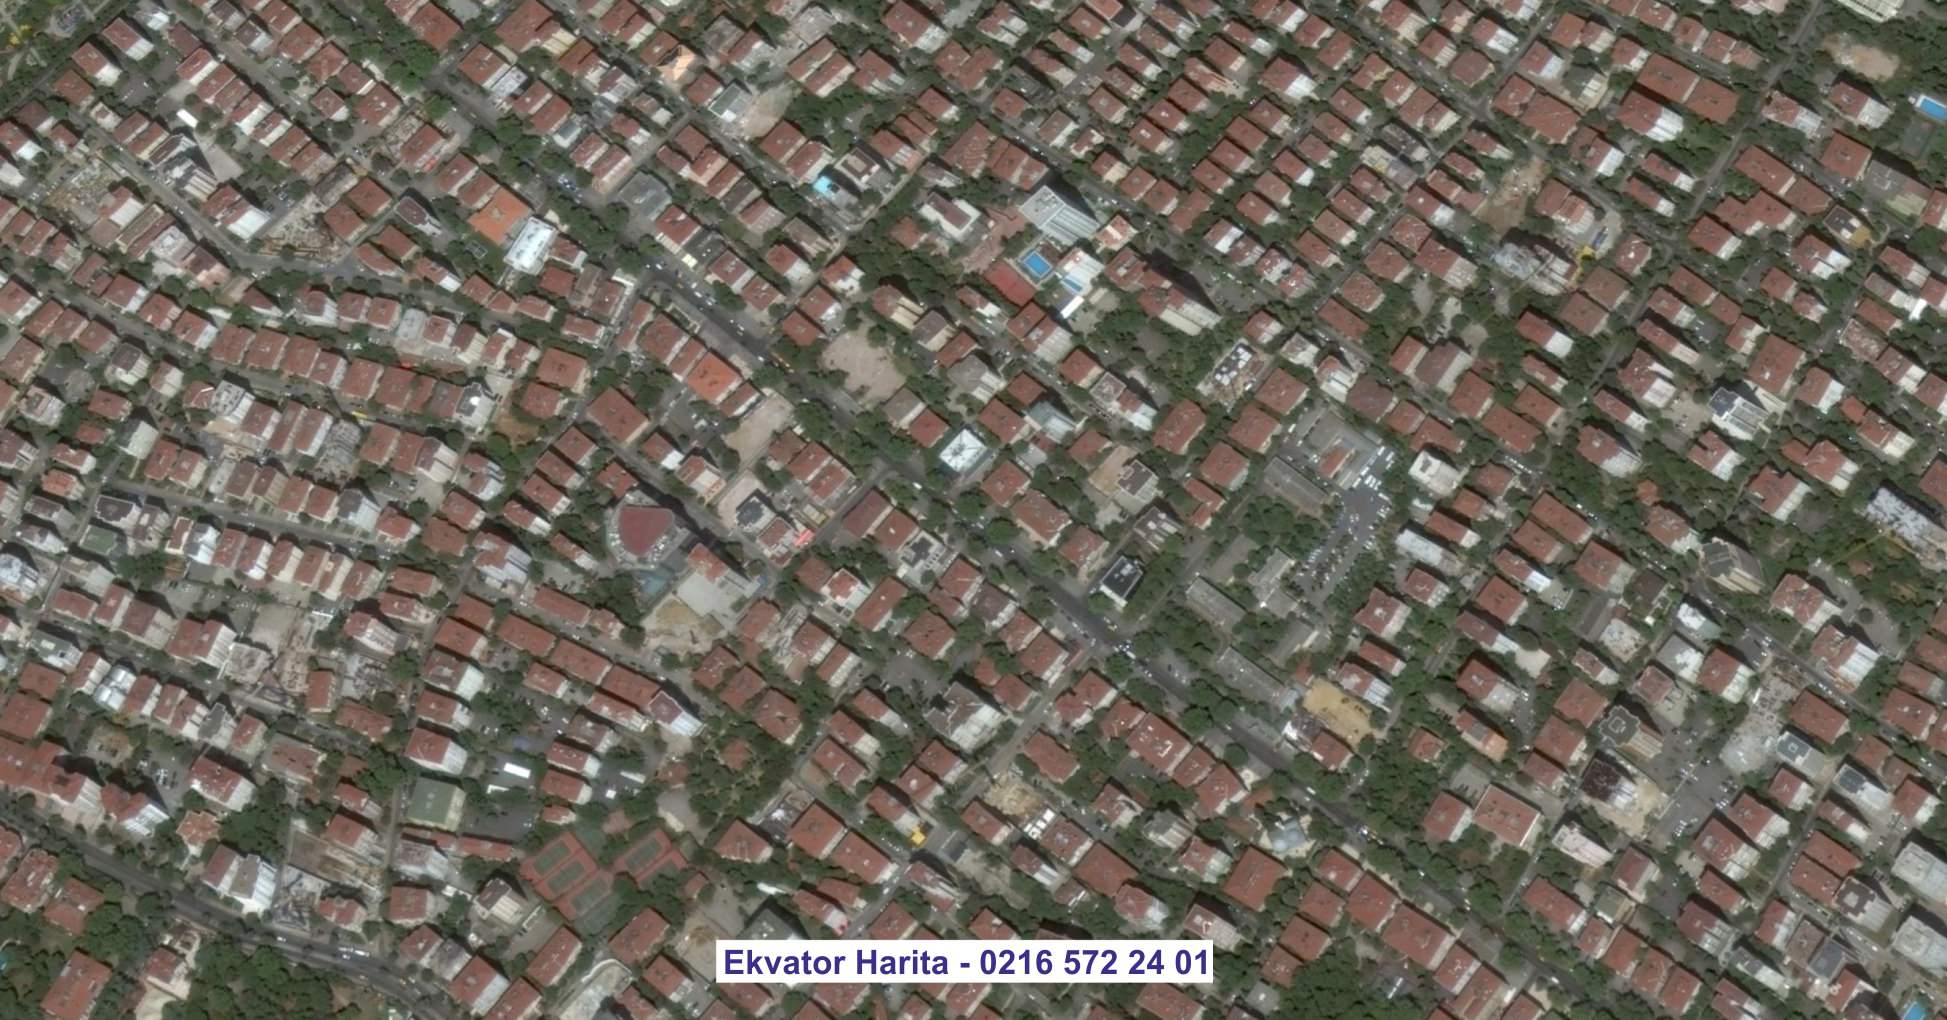 Sultangazi Uydu Görüntüsü Örnek Fotoğrafı